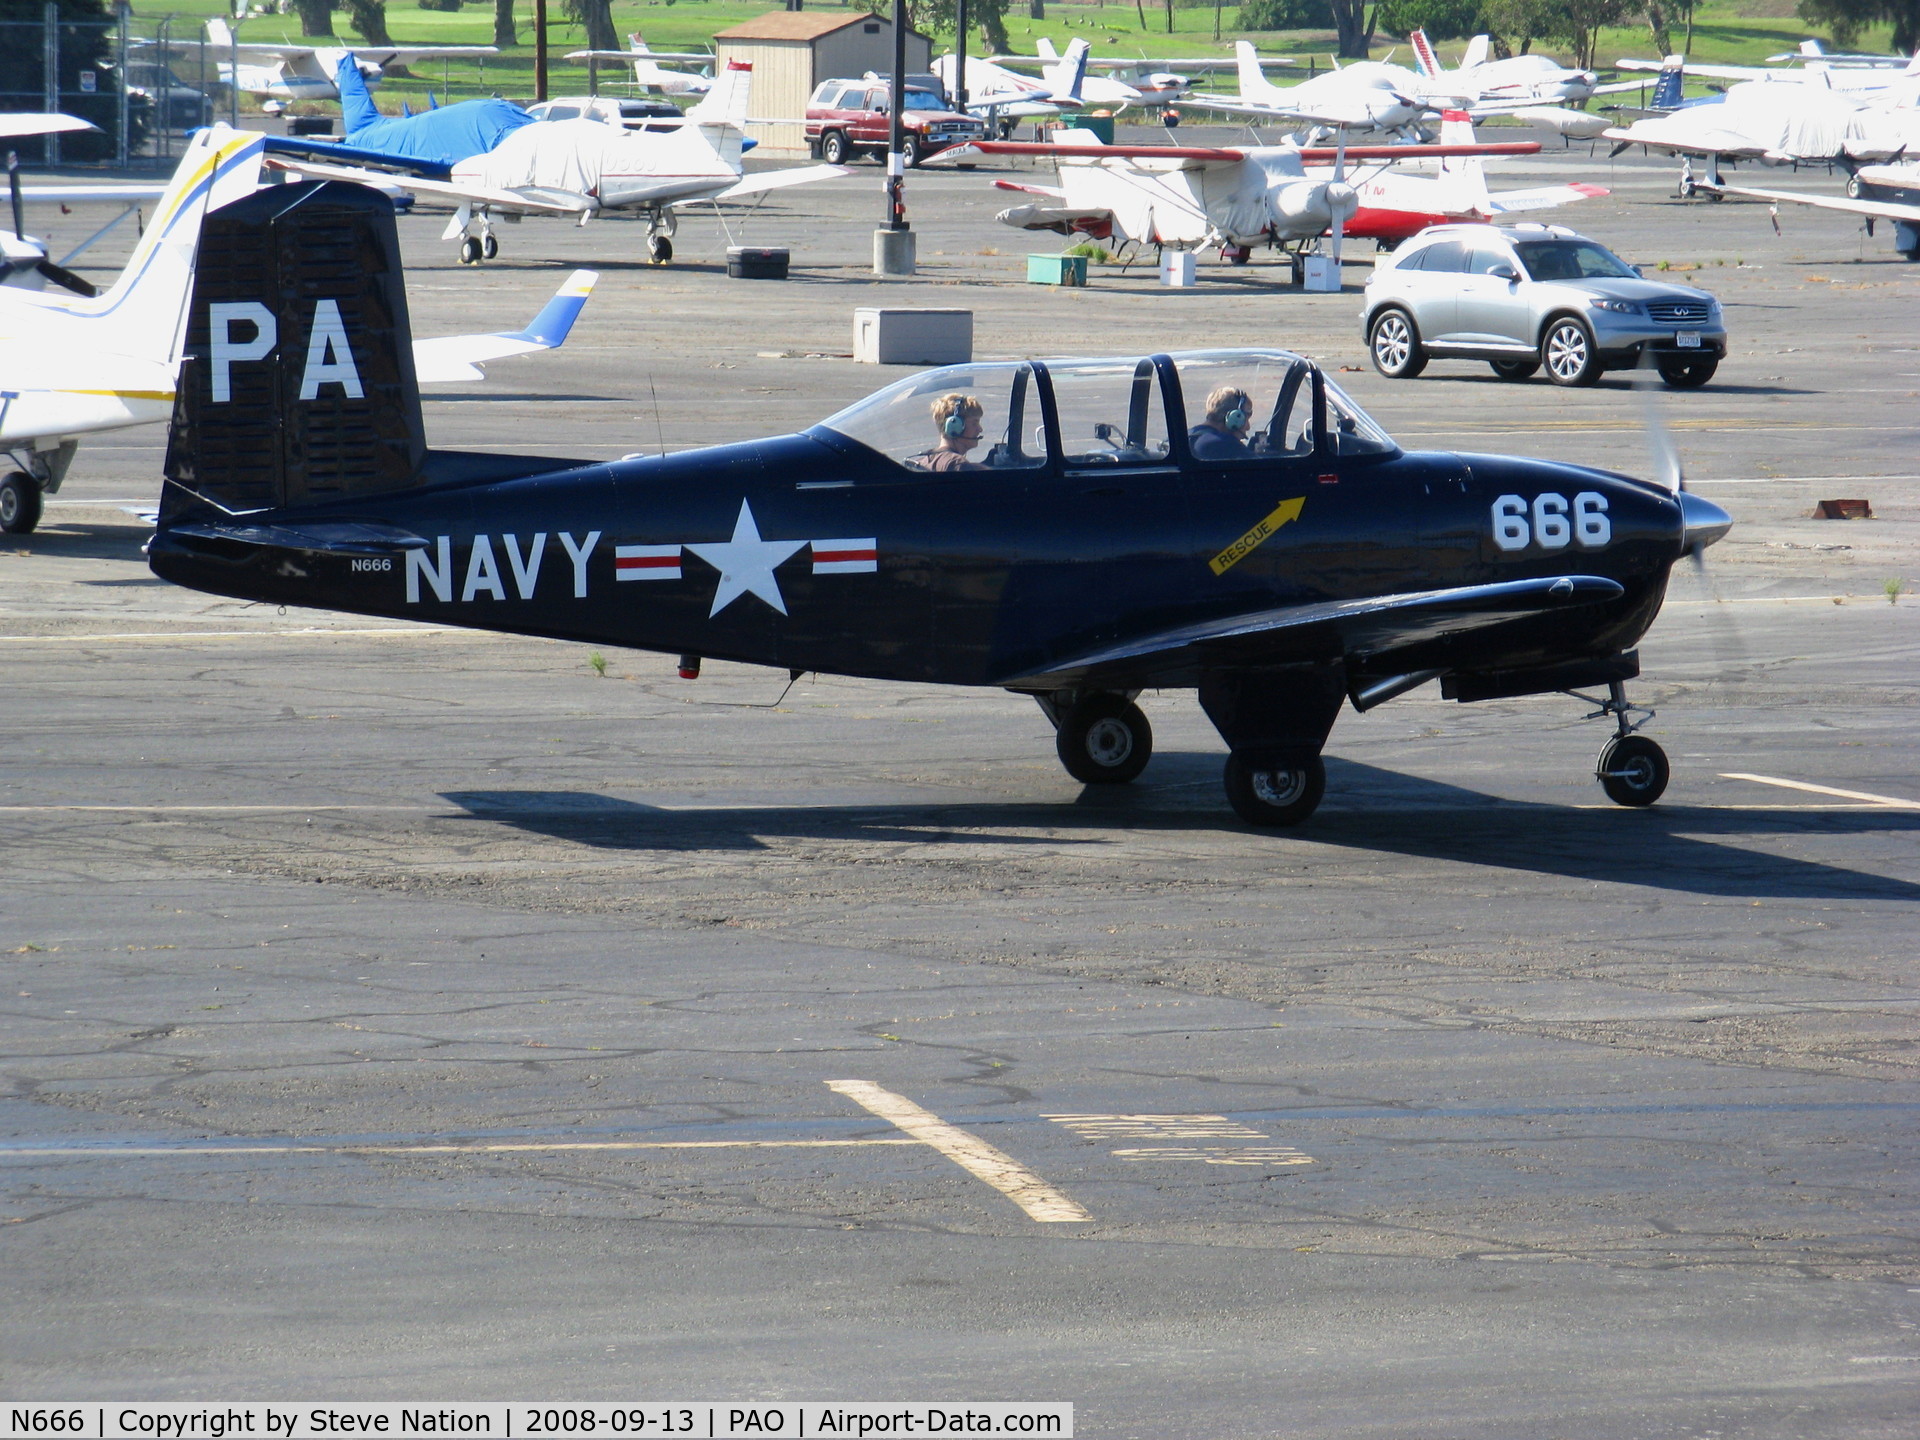 N666, 1958 Beech A45 C/N GM-141, Beech T-34A PA-666 as Navy taxying @ Palo Alto, CA